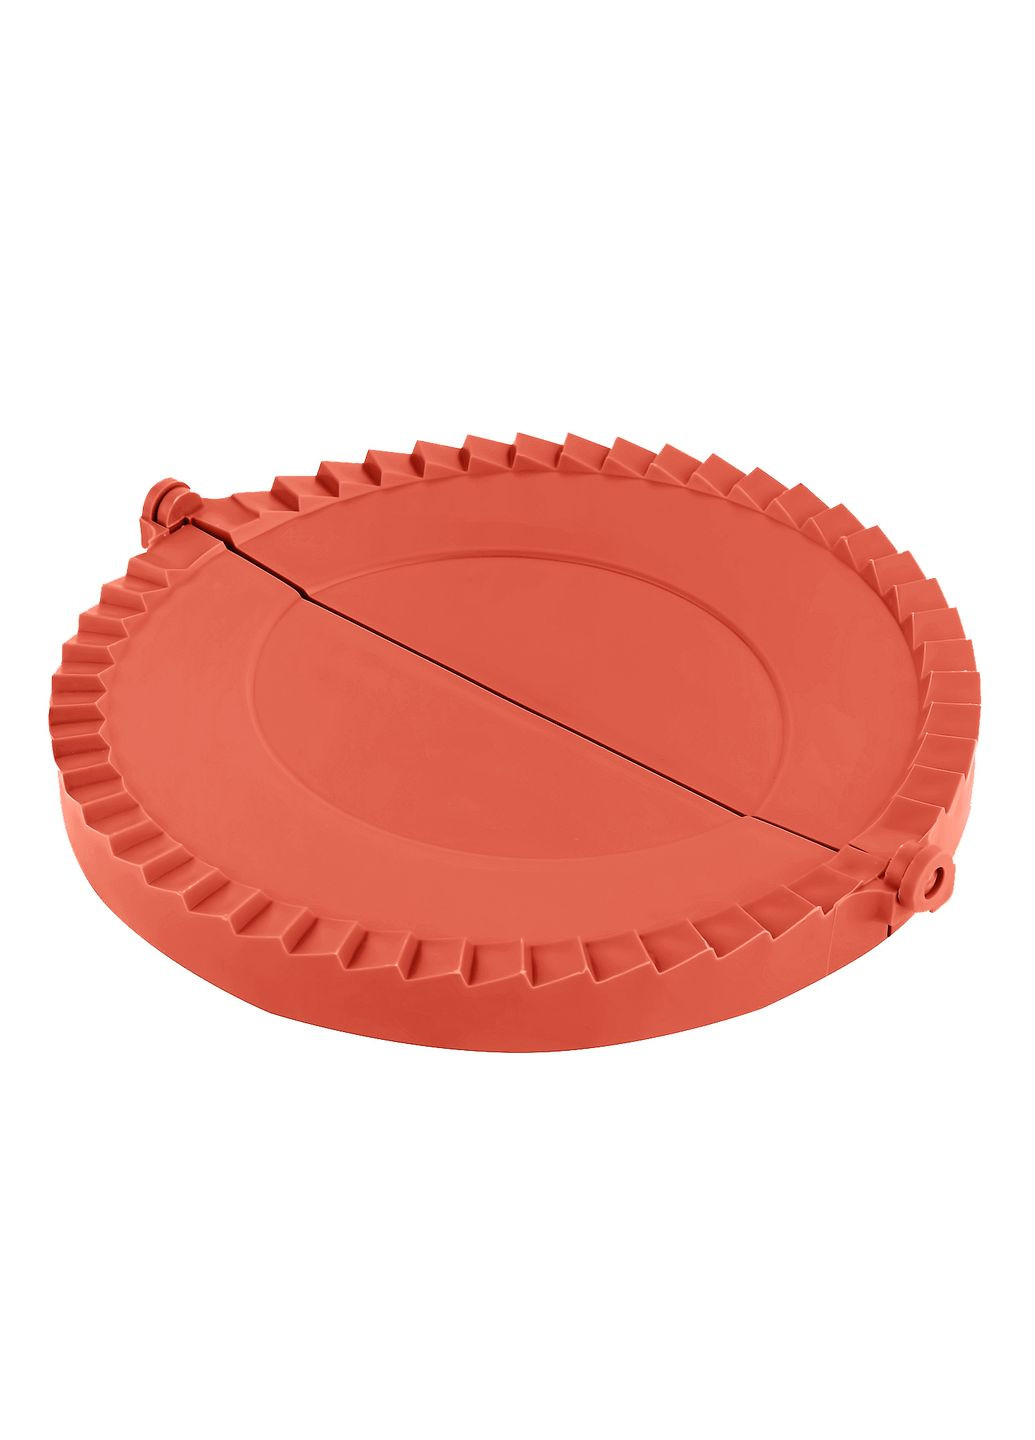 Пластиковая форма для лепки чебуреков и пирожков (чебуречница) диаметр 18 см Красный Kitchette (271667232)